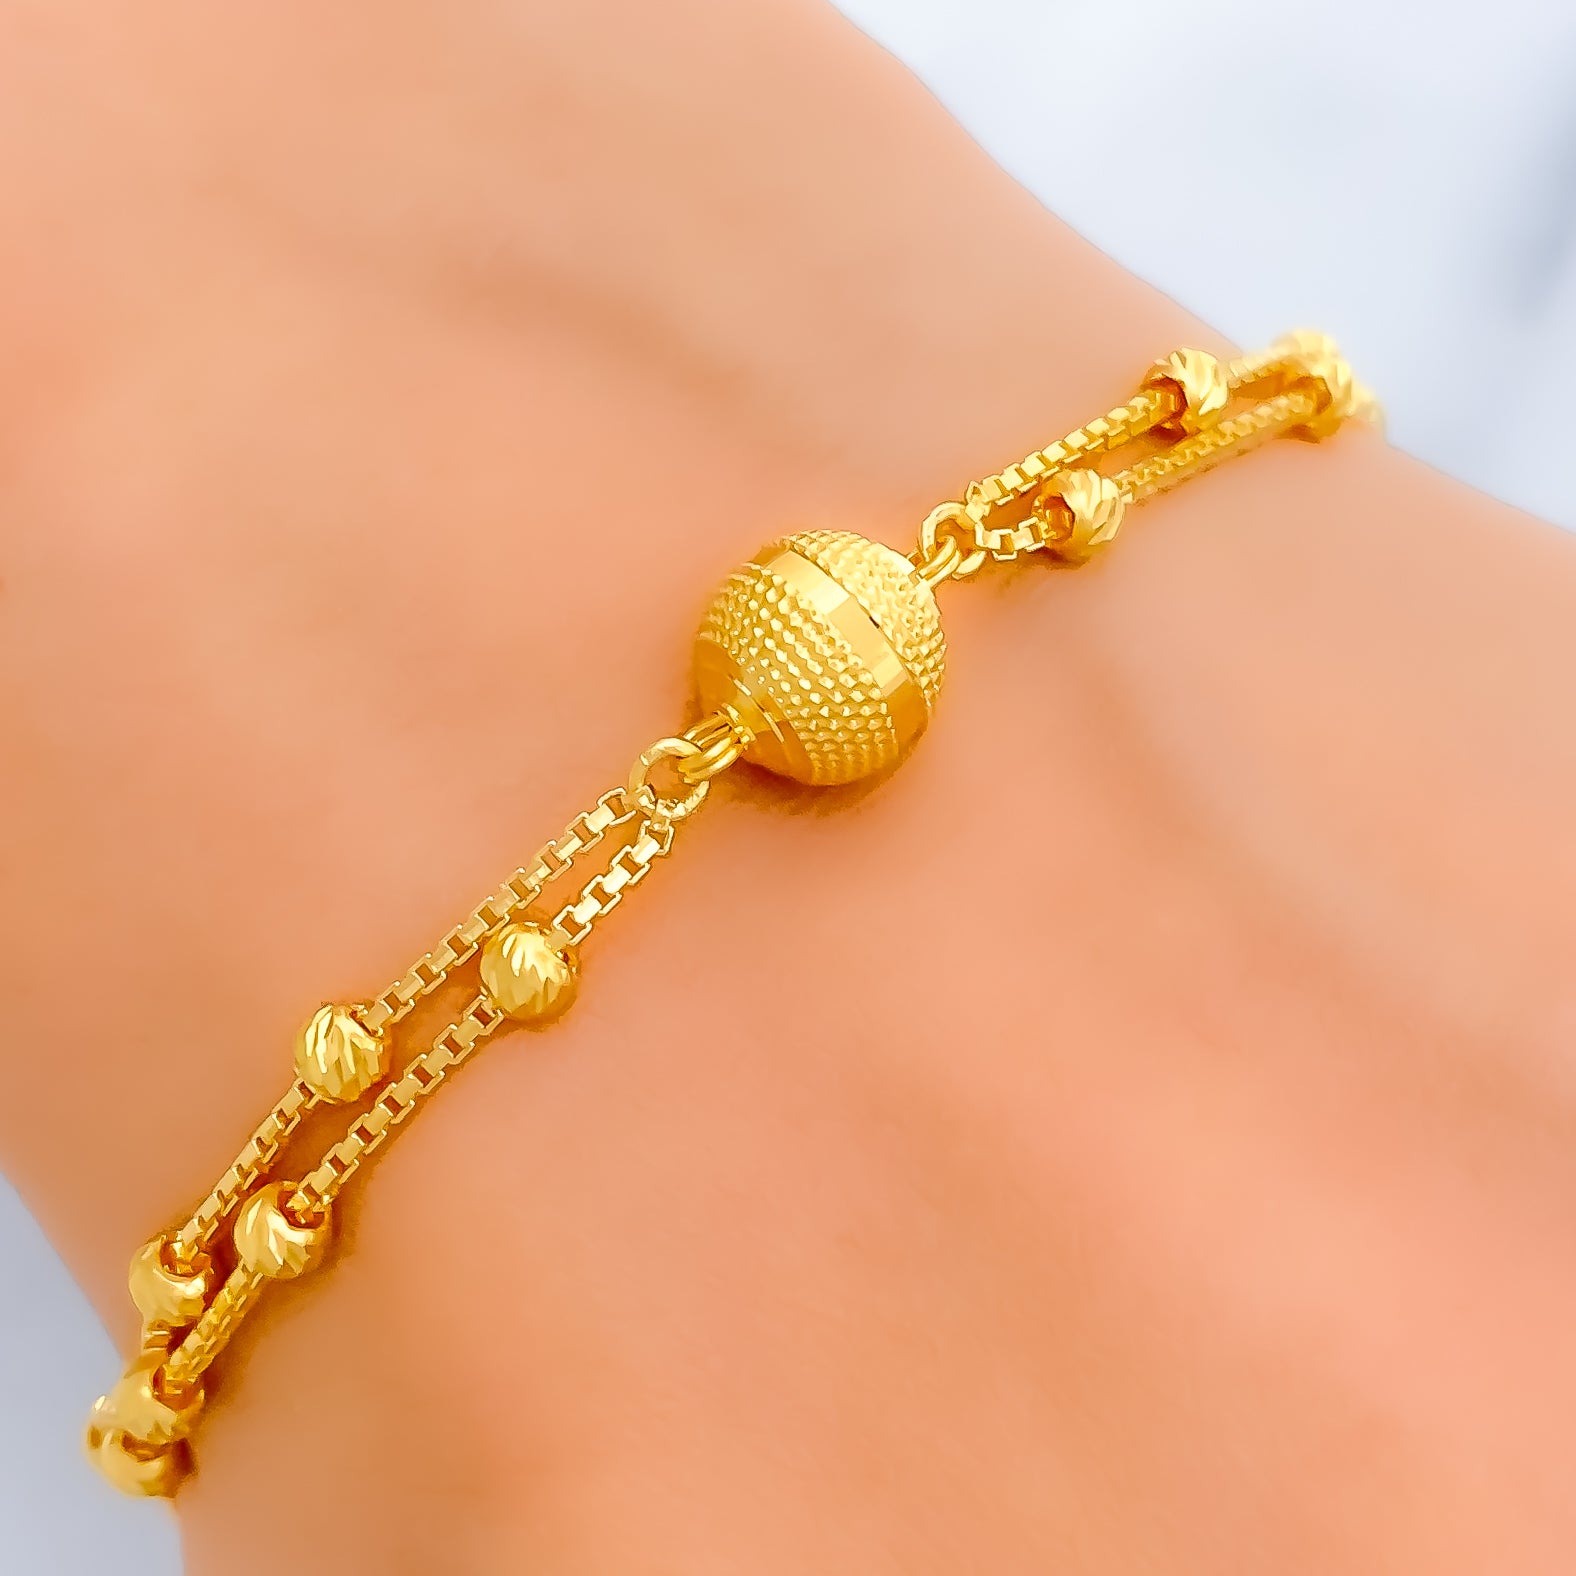 Gold Bracelets For Men - Mens Gold Bracelet Designs Online at Best Prices  in India | Flipkart.com